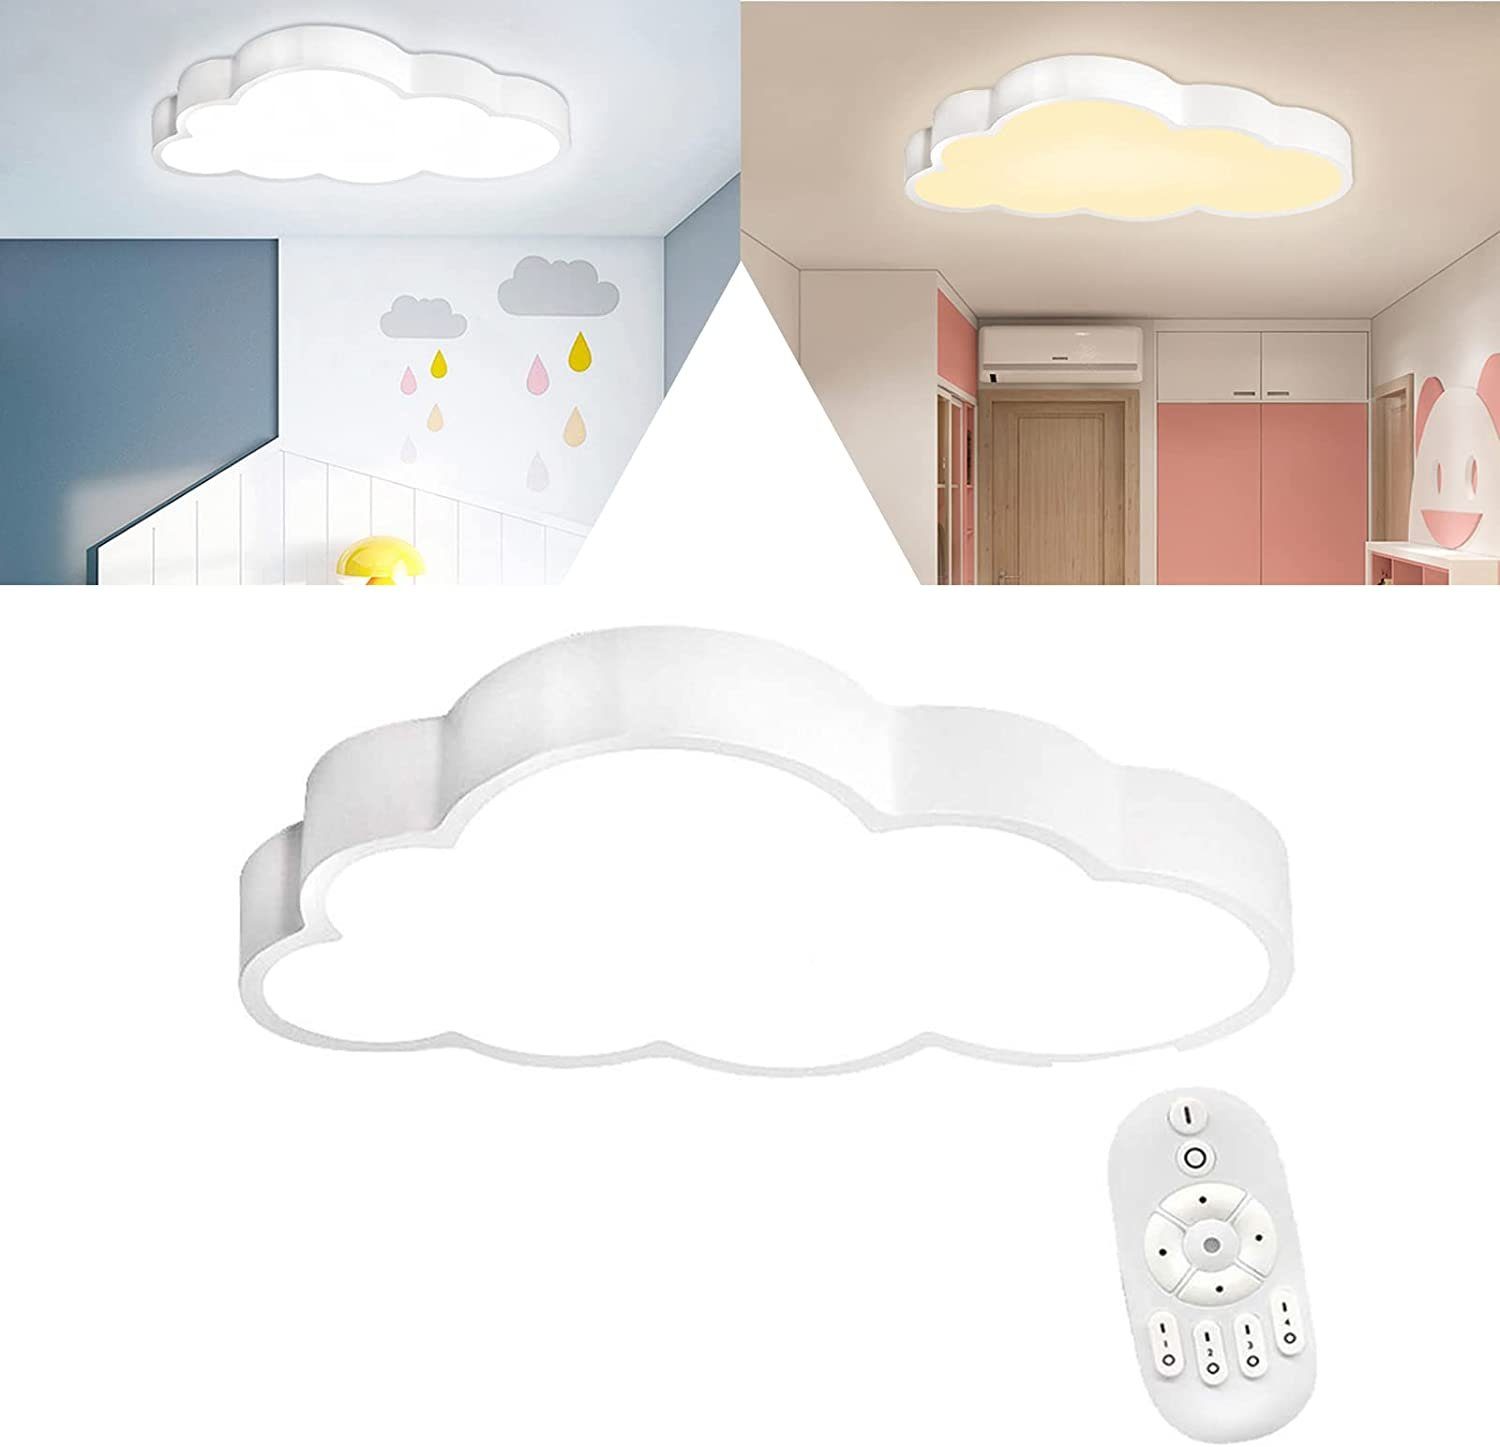 Wolken Deckenlampe LED UISEBRT 48W Deckenleuchte Kinderzimmerlampe